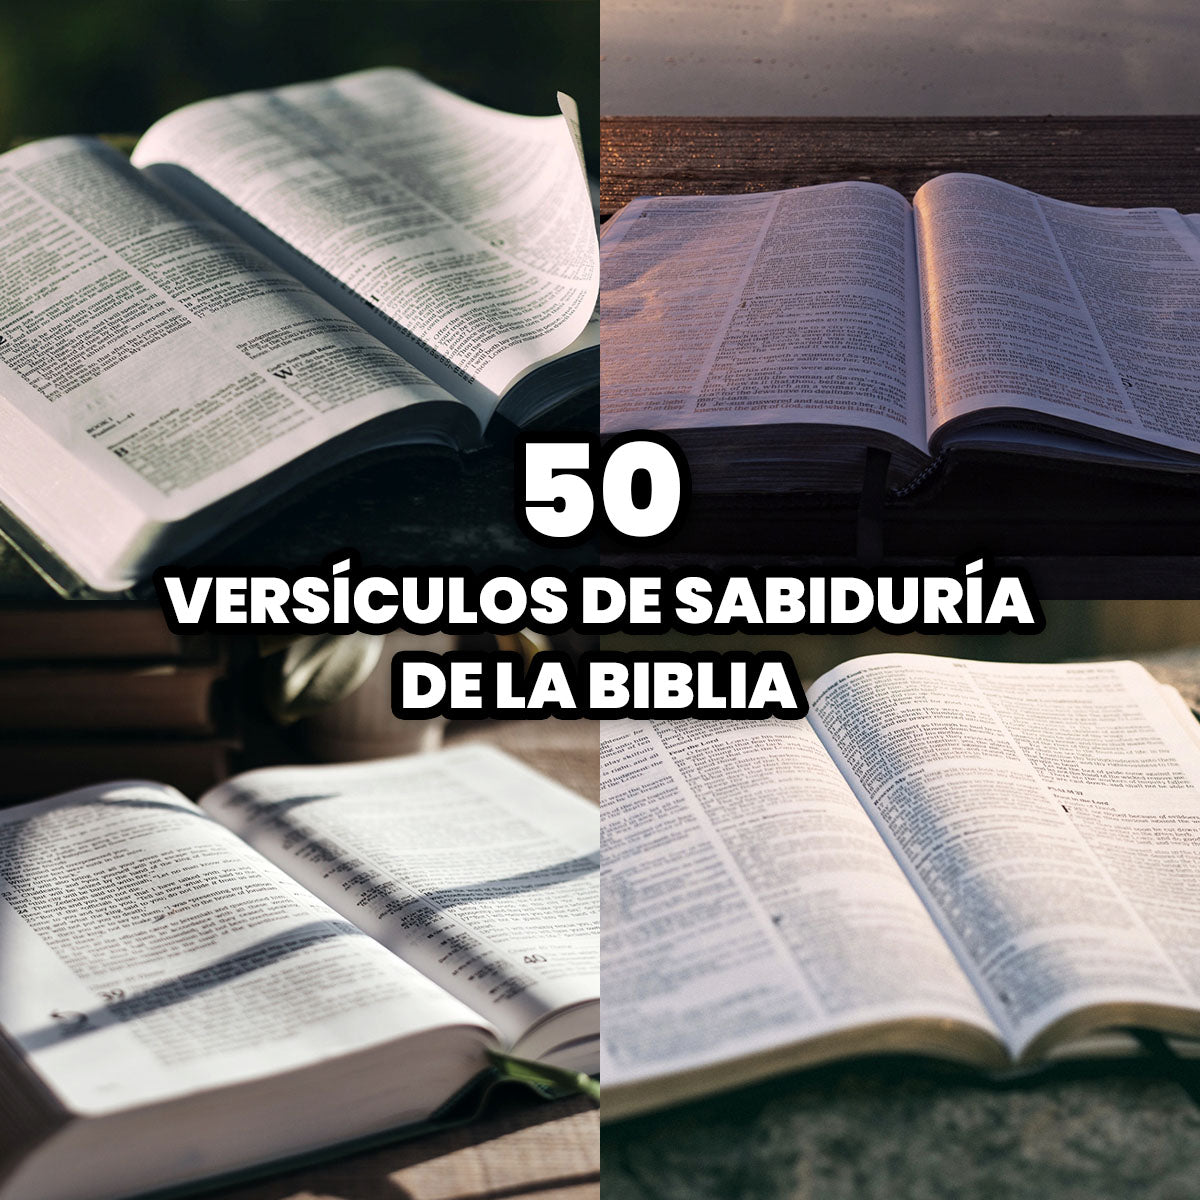 Los 50 Mejores Versículos de Sabiduría de la Biblia